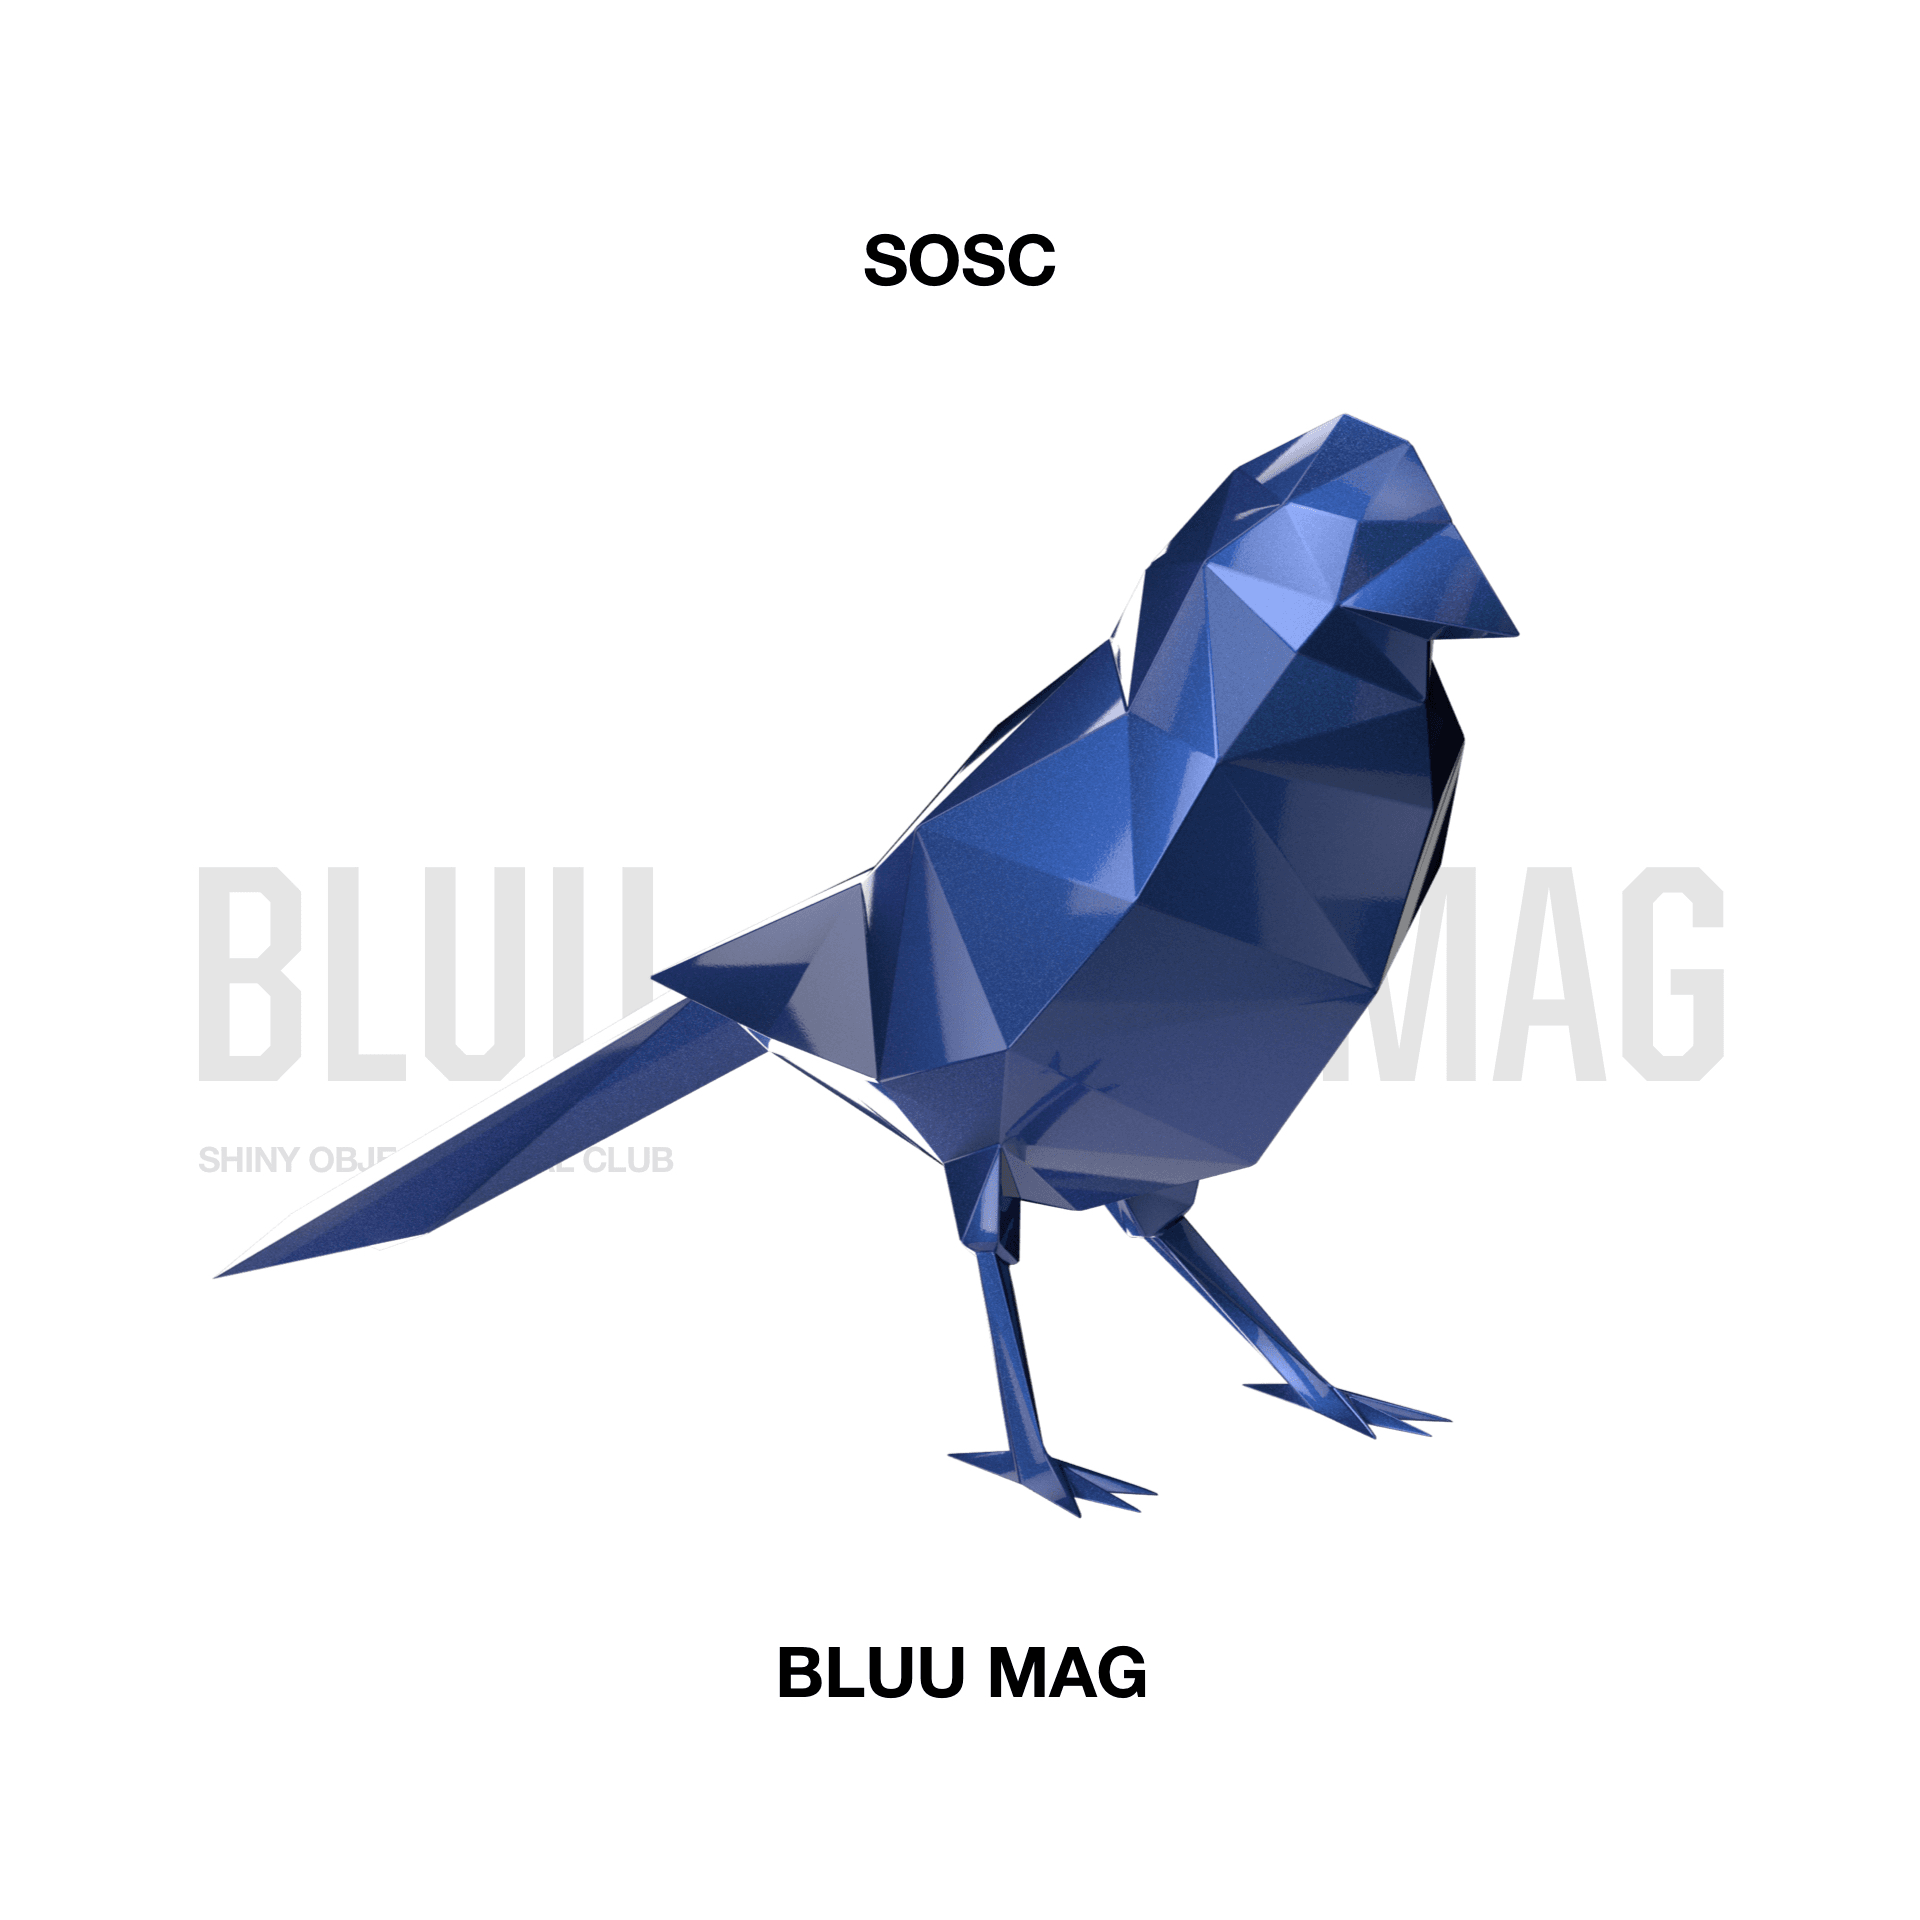 Bluu Mag